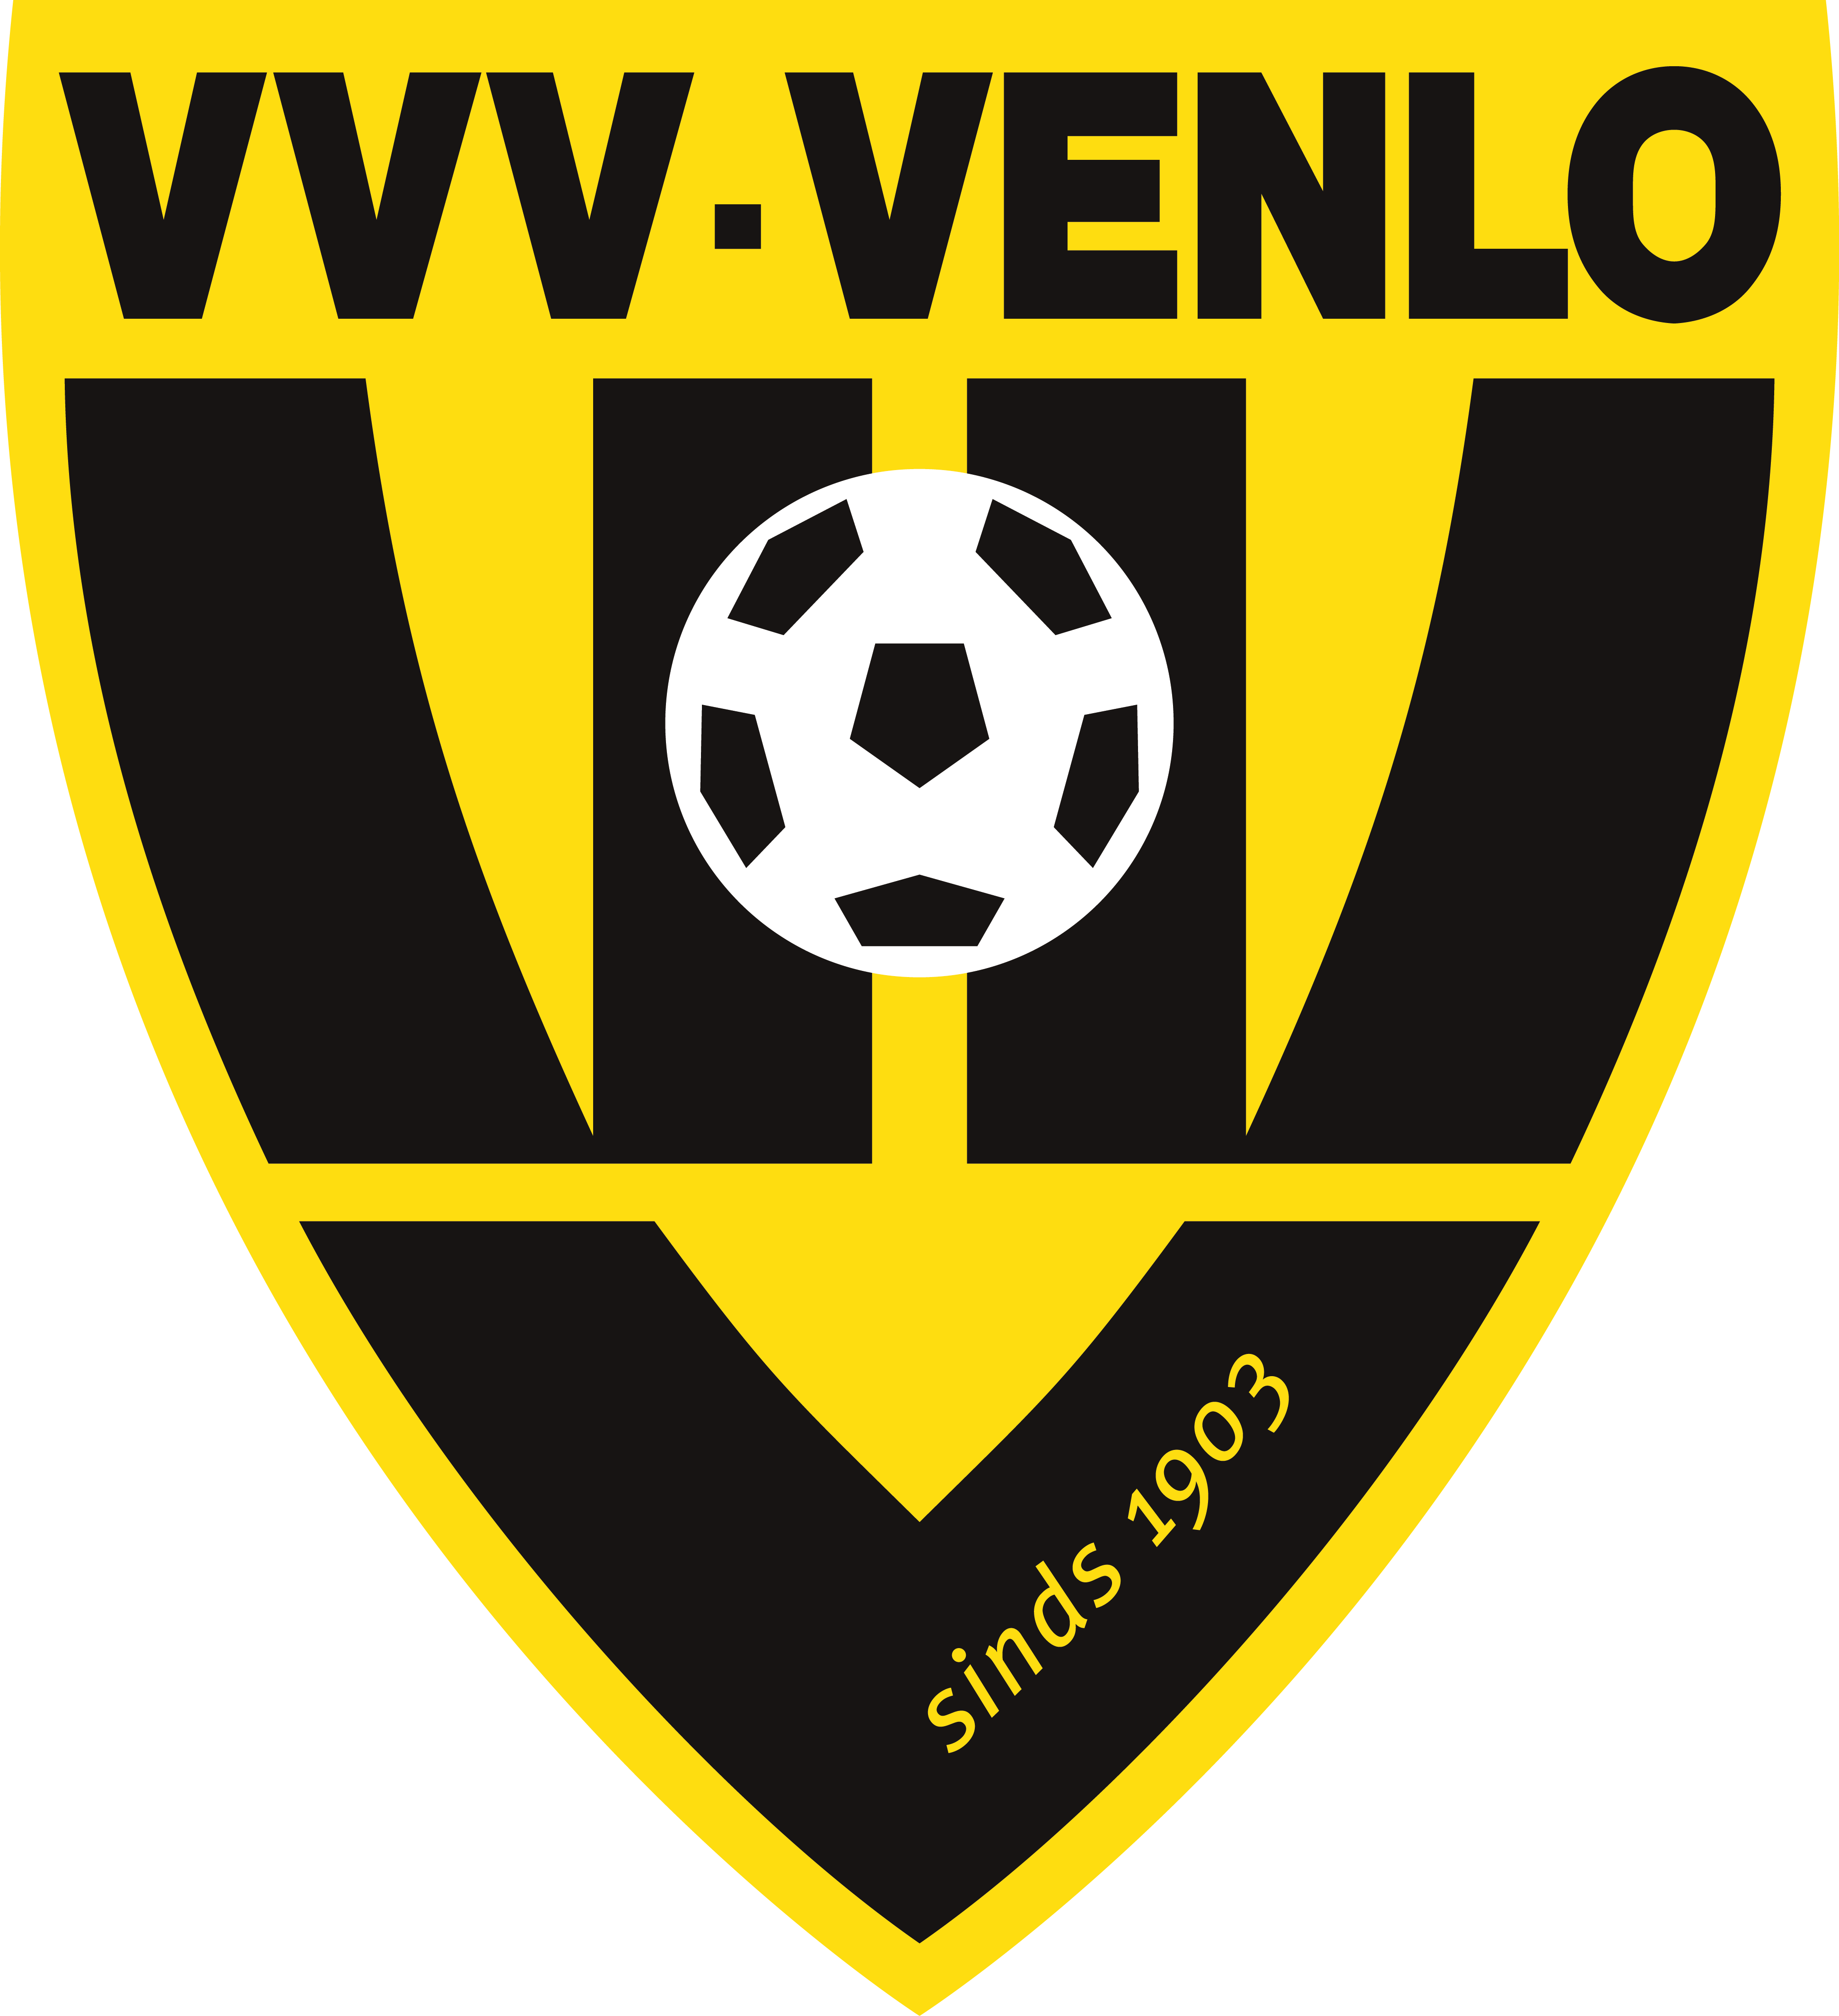 VVV芬洛足球俱樂部